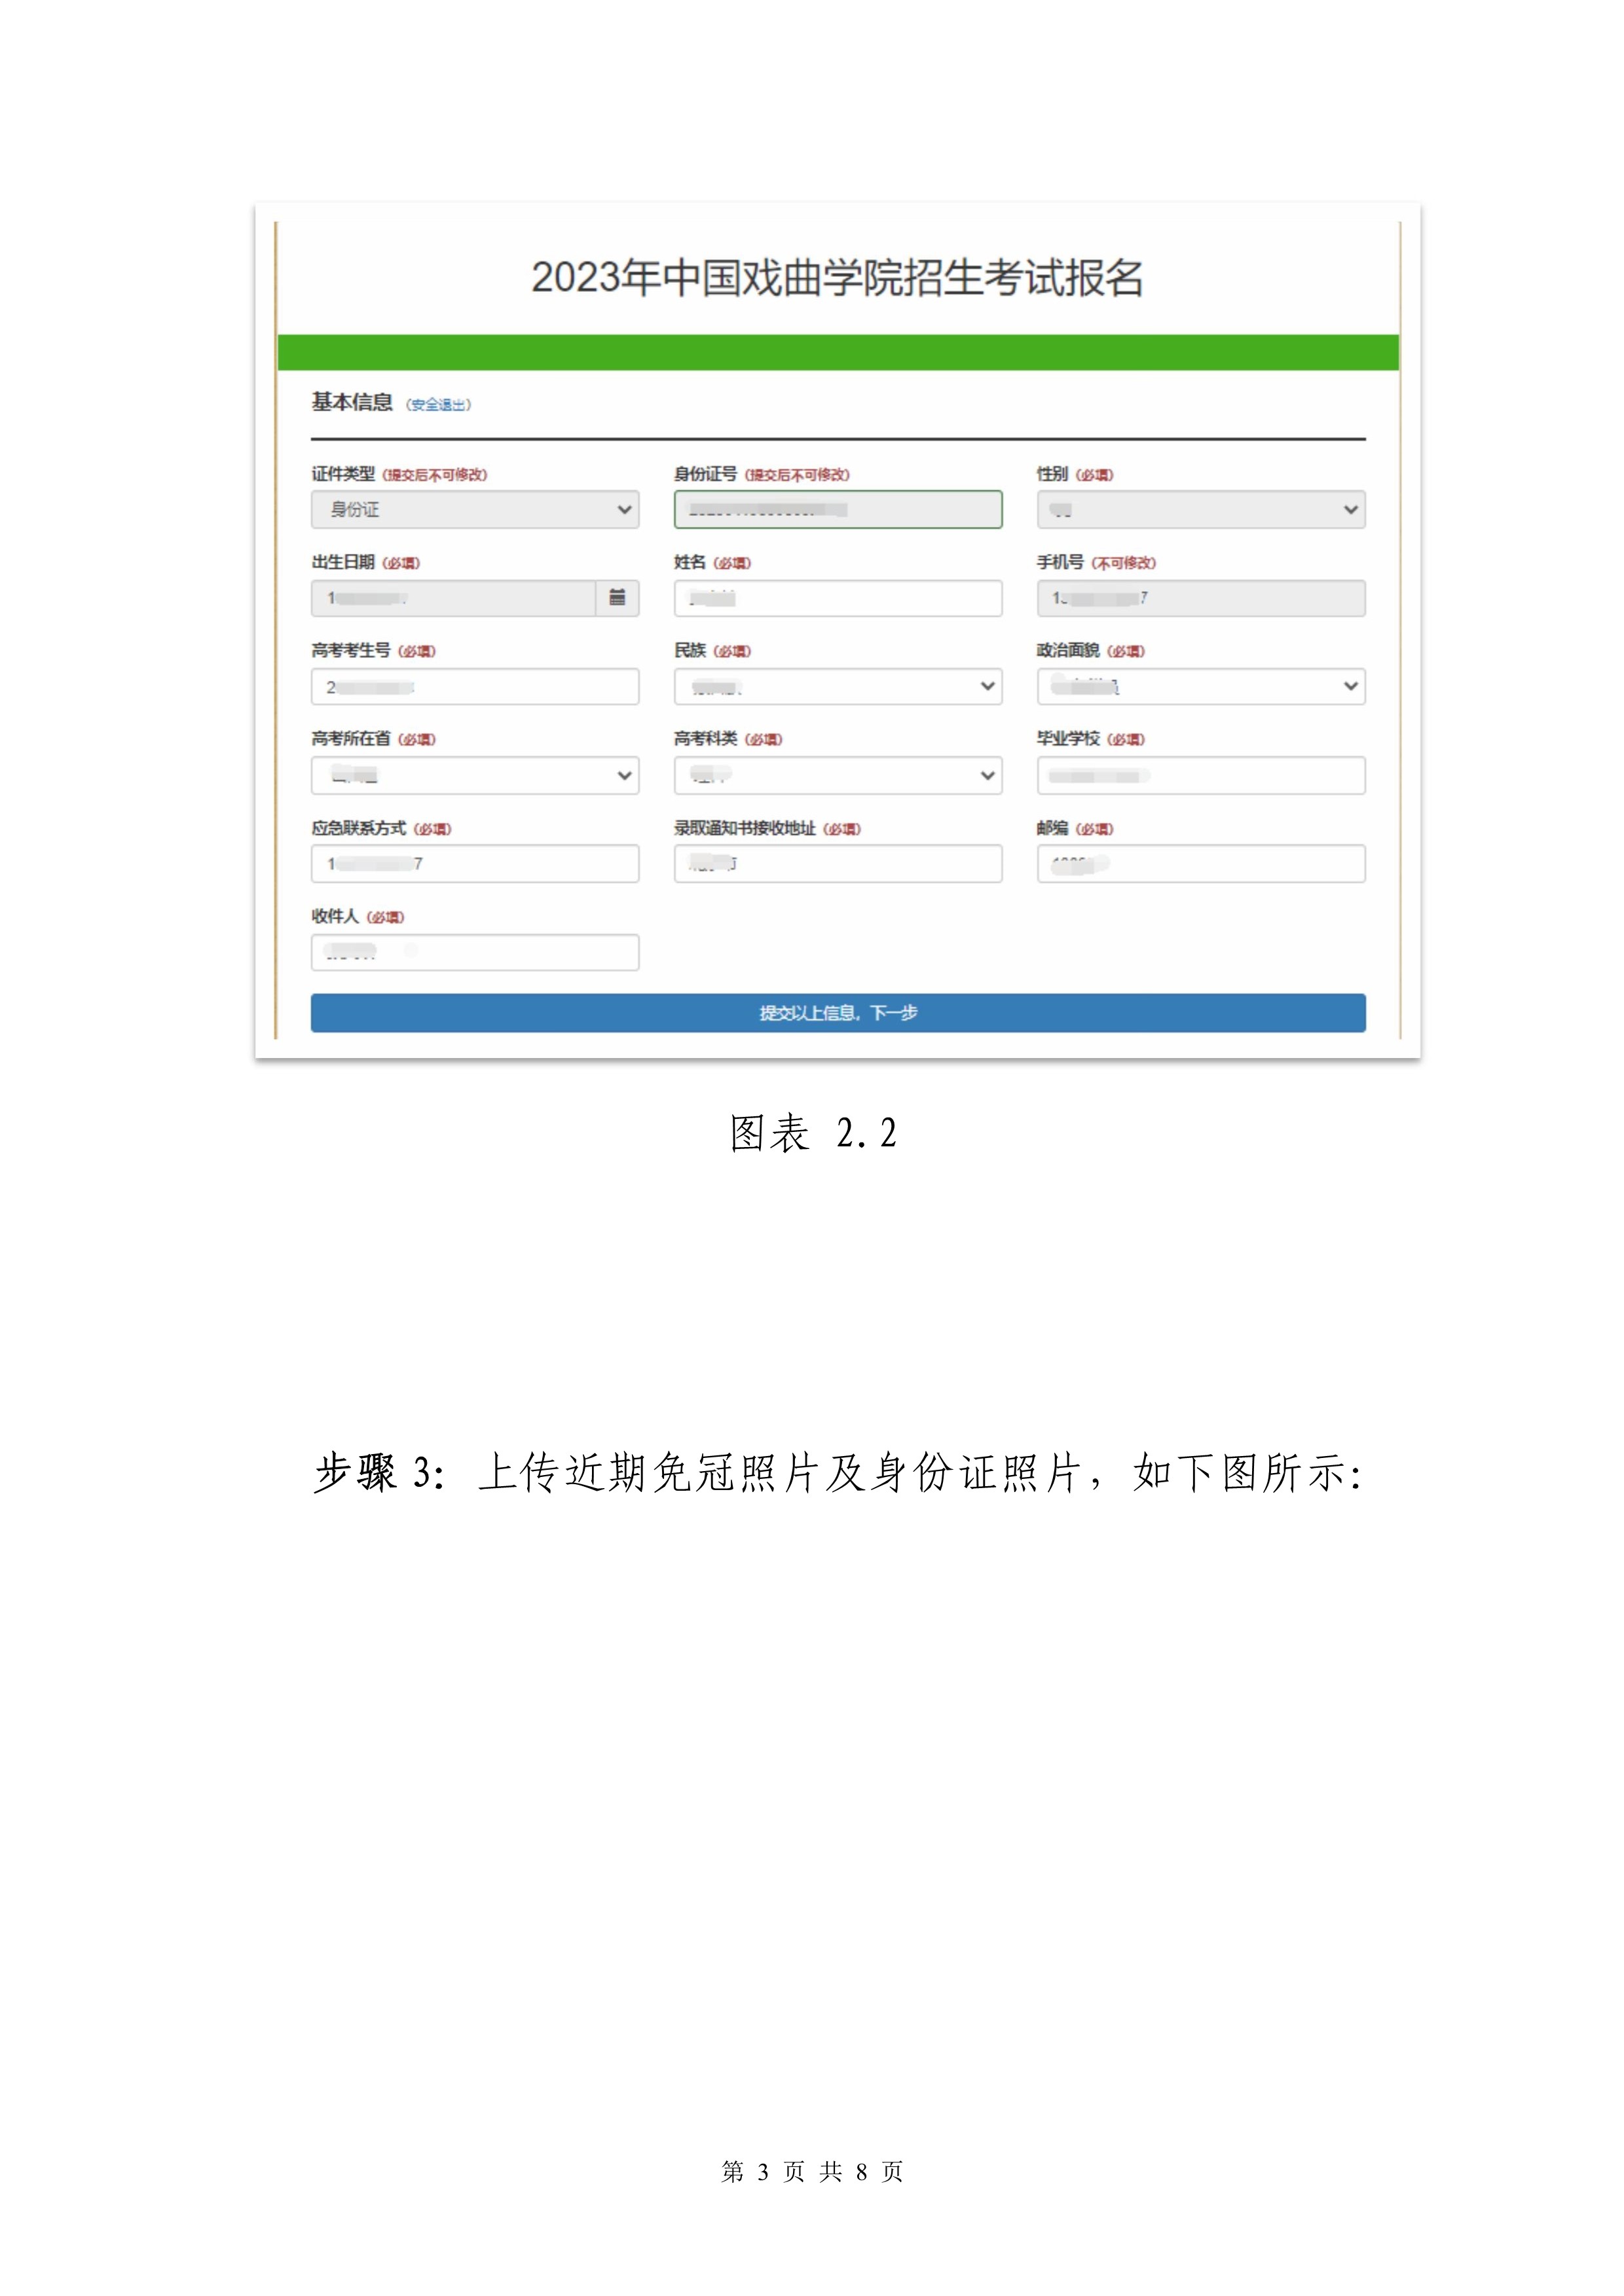 中国戏曲学院2023本科招生专业考试网上报名操作手册_3.jpg